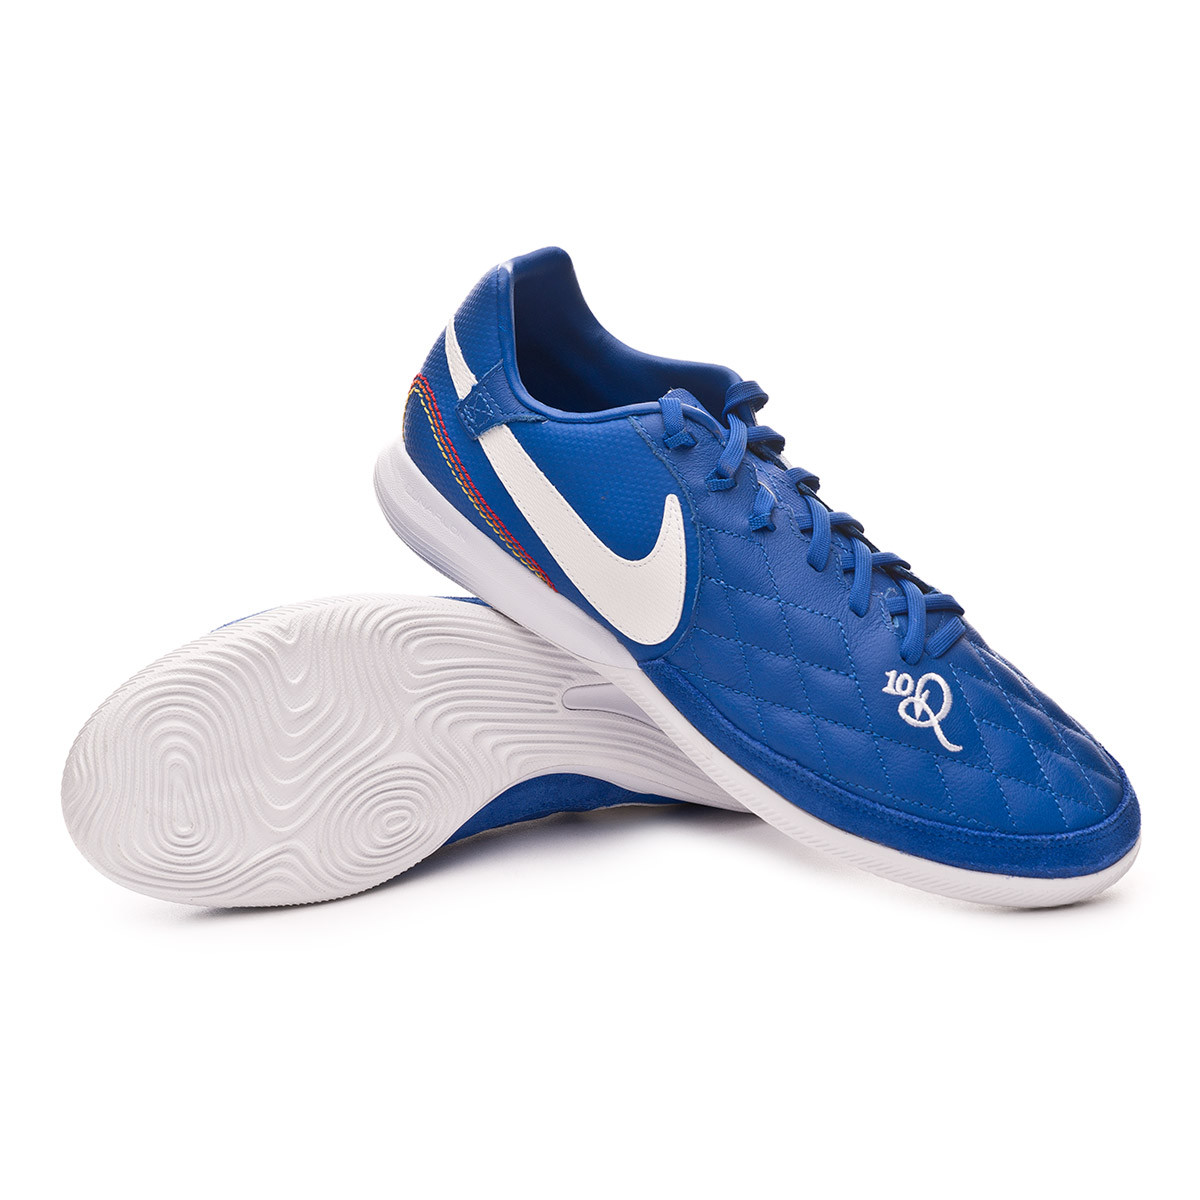 nike lunar legendx 7 pro 10r indoor soccer shoes